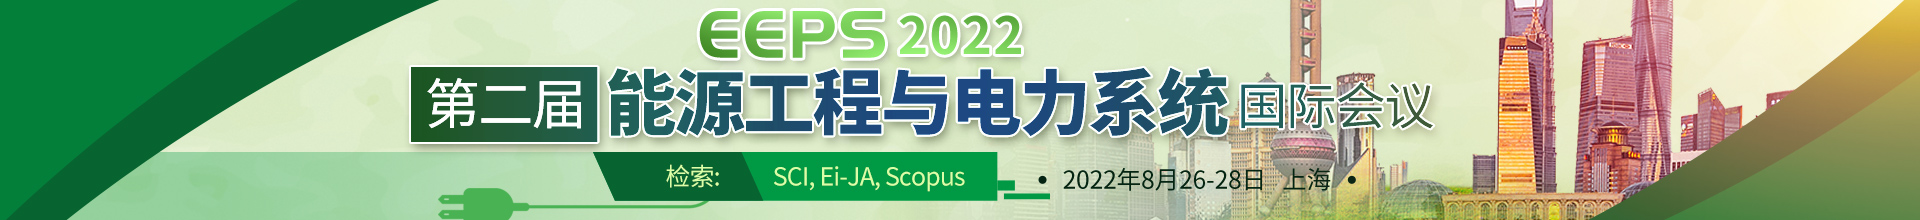 8月上海-EEPS2022-学术会议云PC端-尹旭舟20220321.jpg